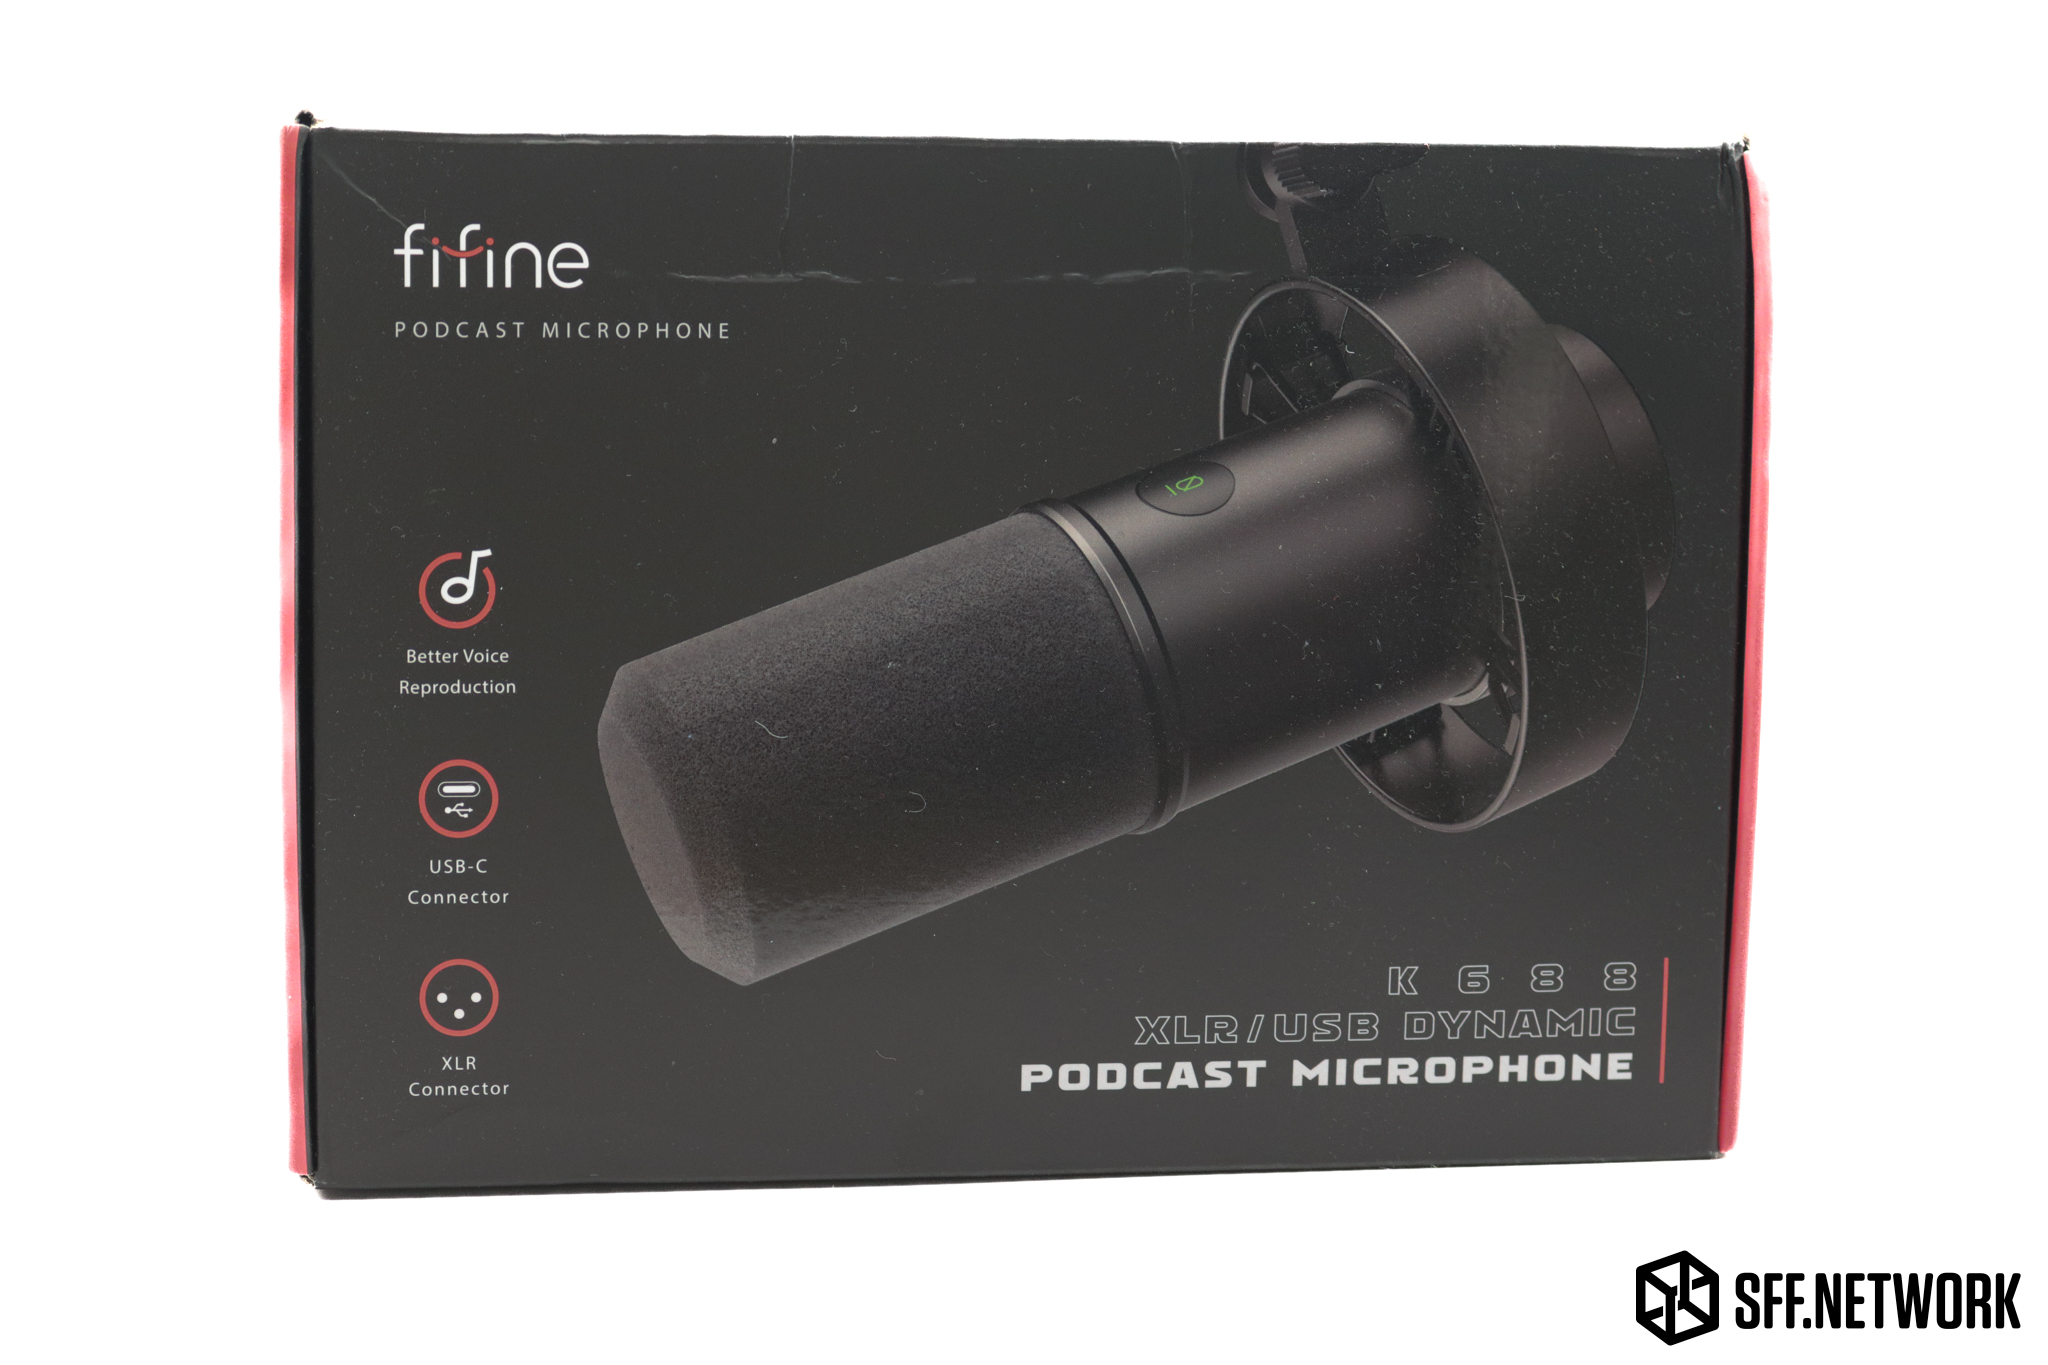 Fifine K688 vs AM8 Microphones: Budget Dynamic & USB Comparison